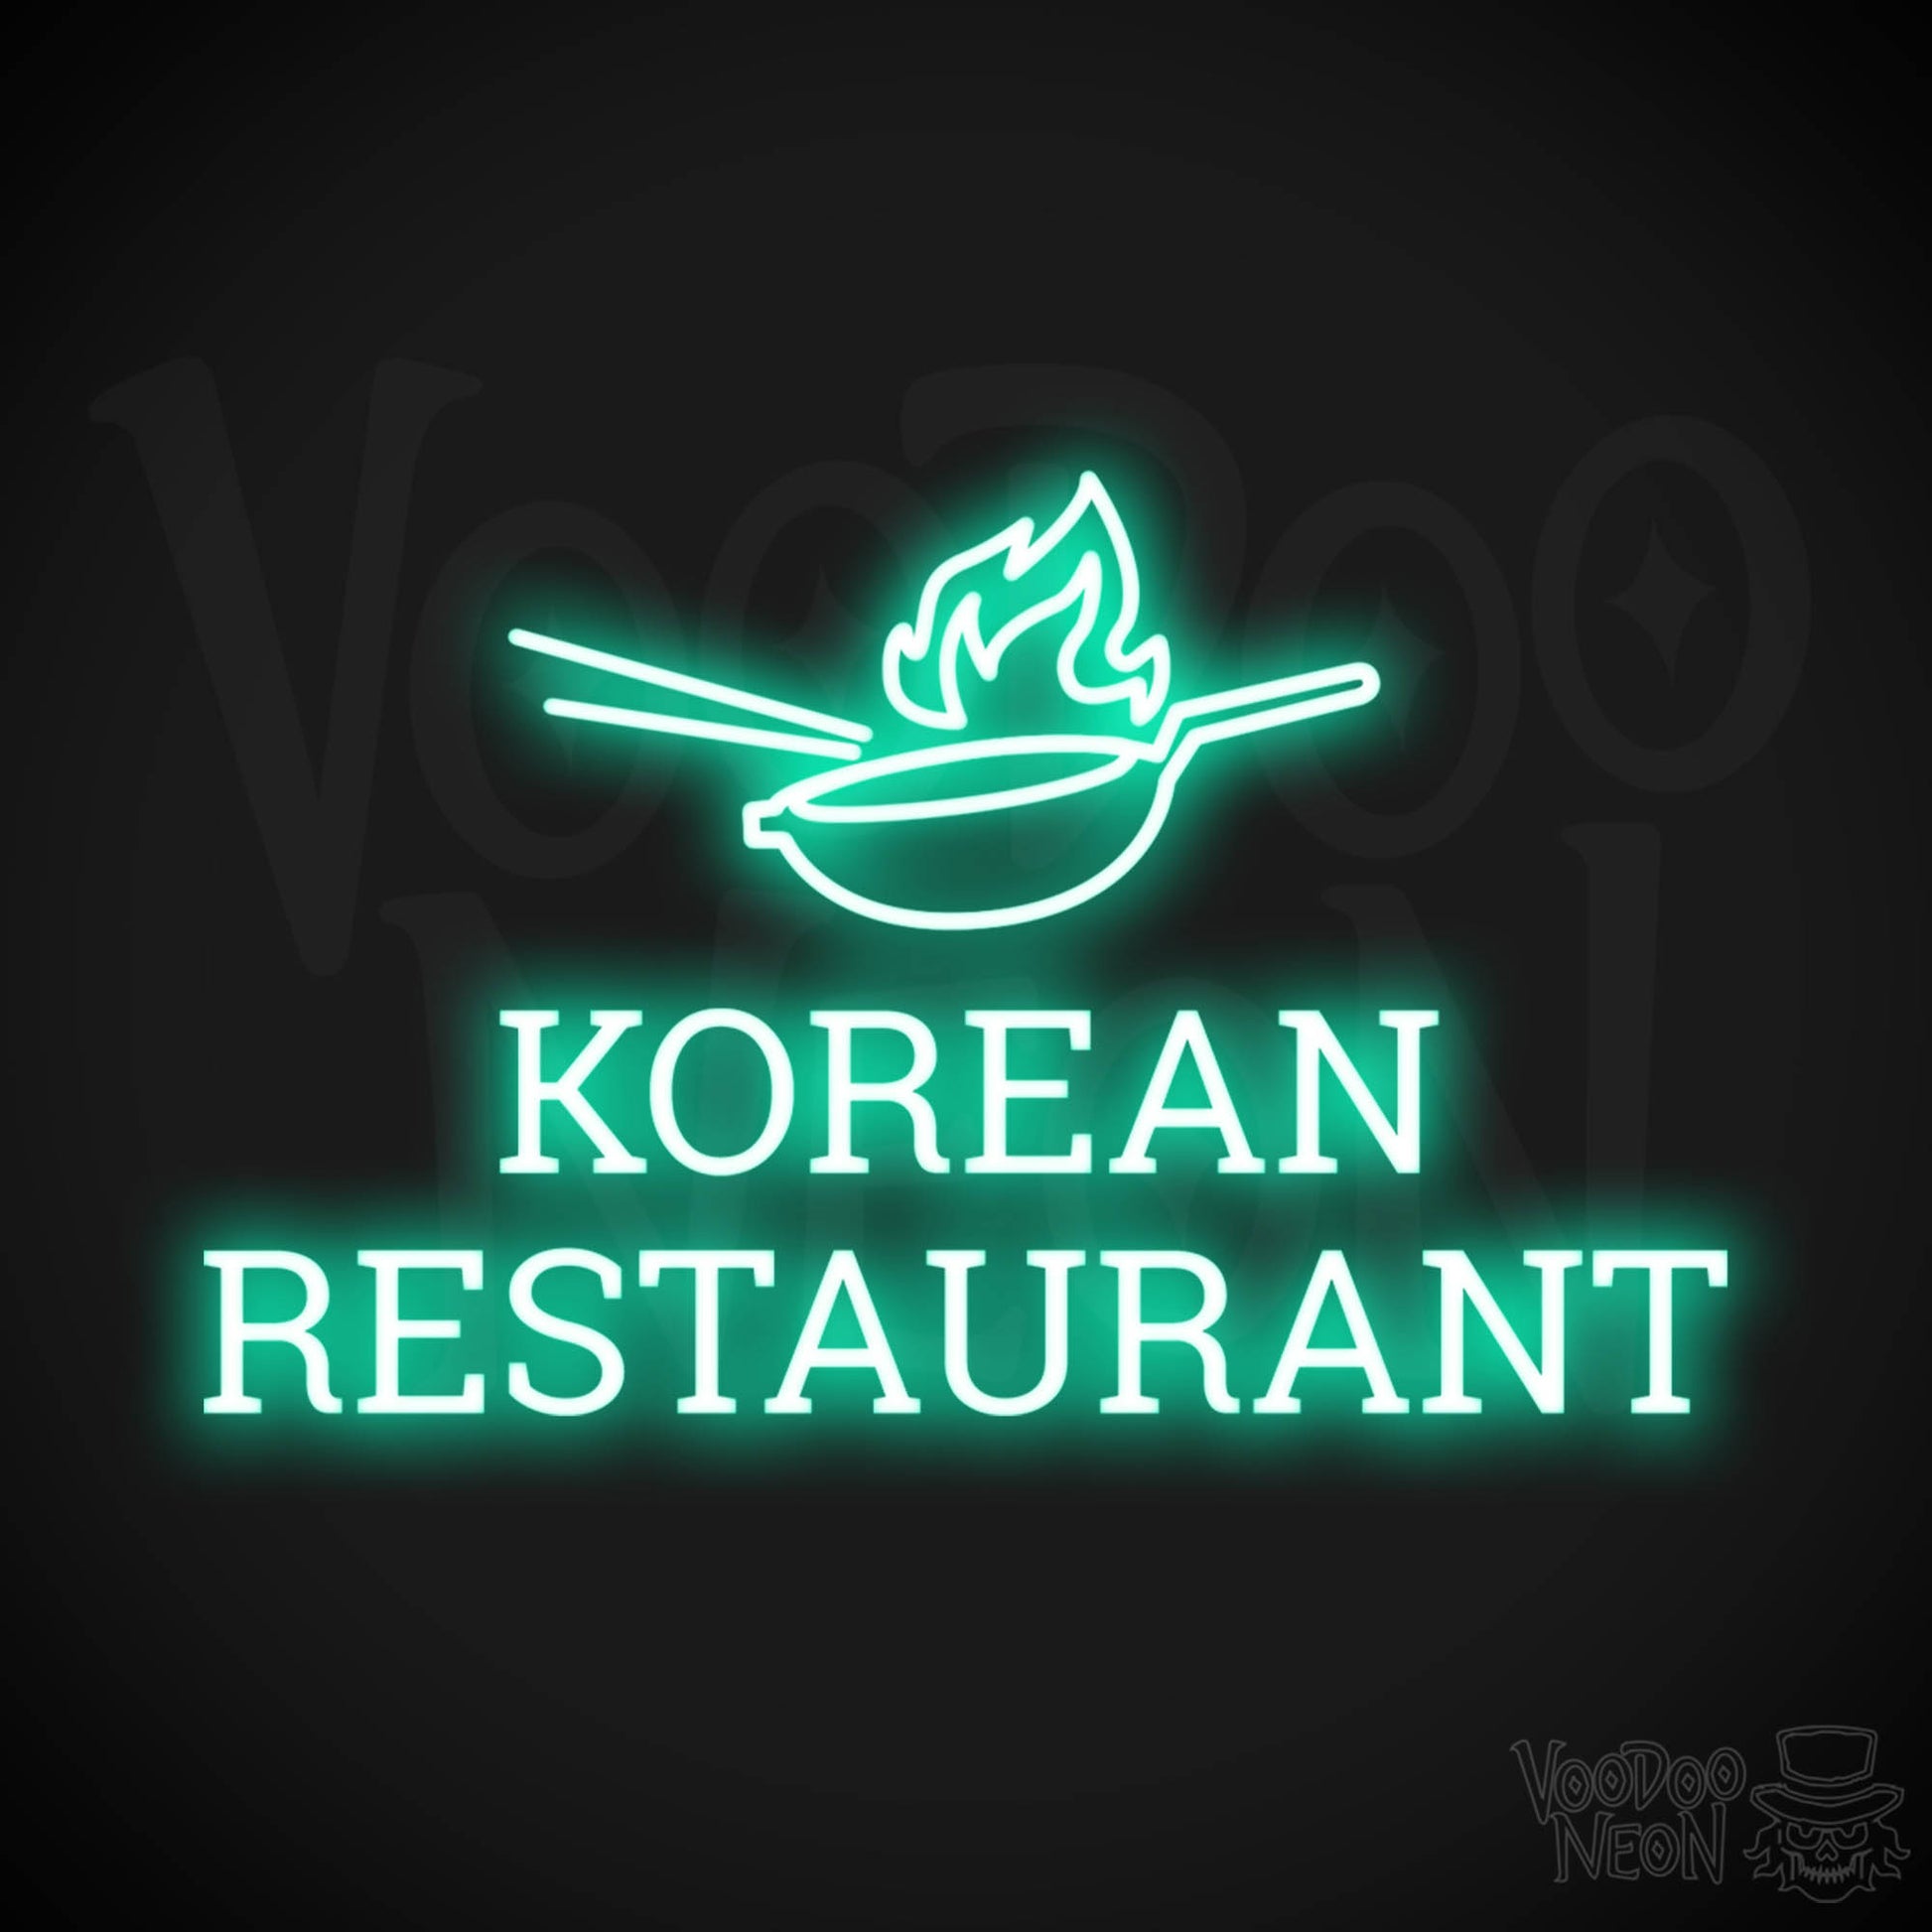 Korean Restaurant LED Neon - Light Green